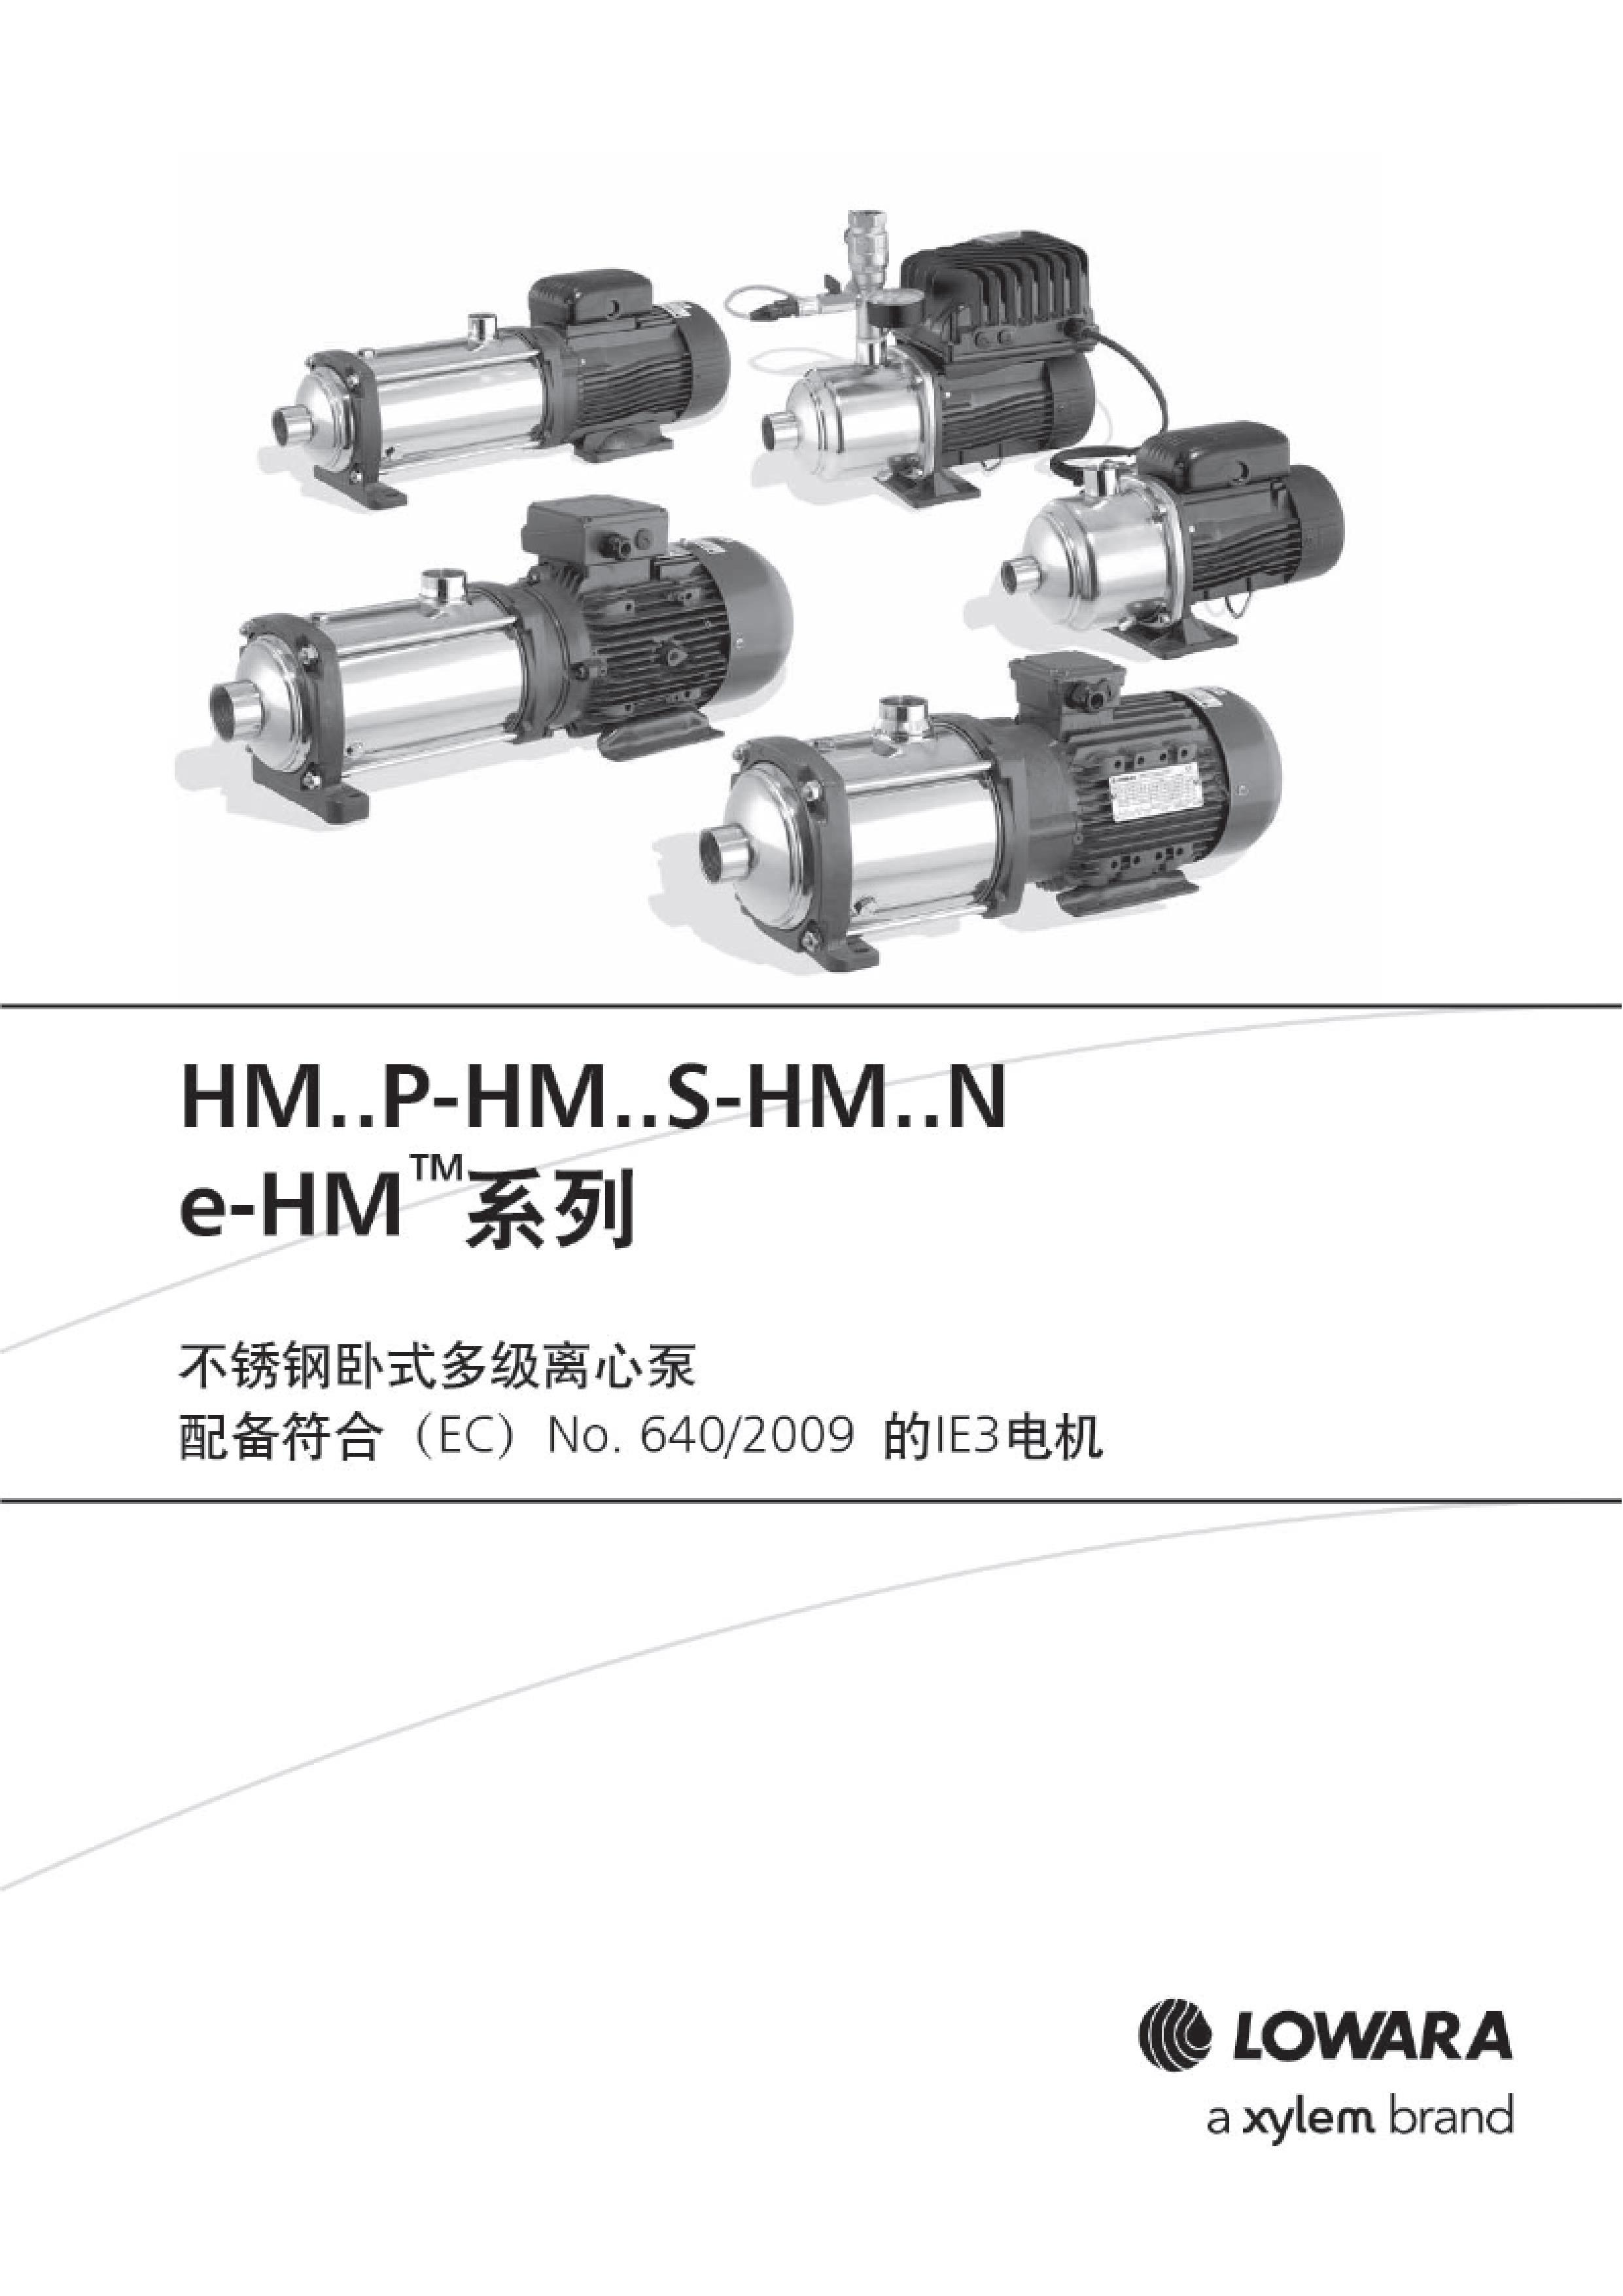 e-HM系列卧式多级增压泵